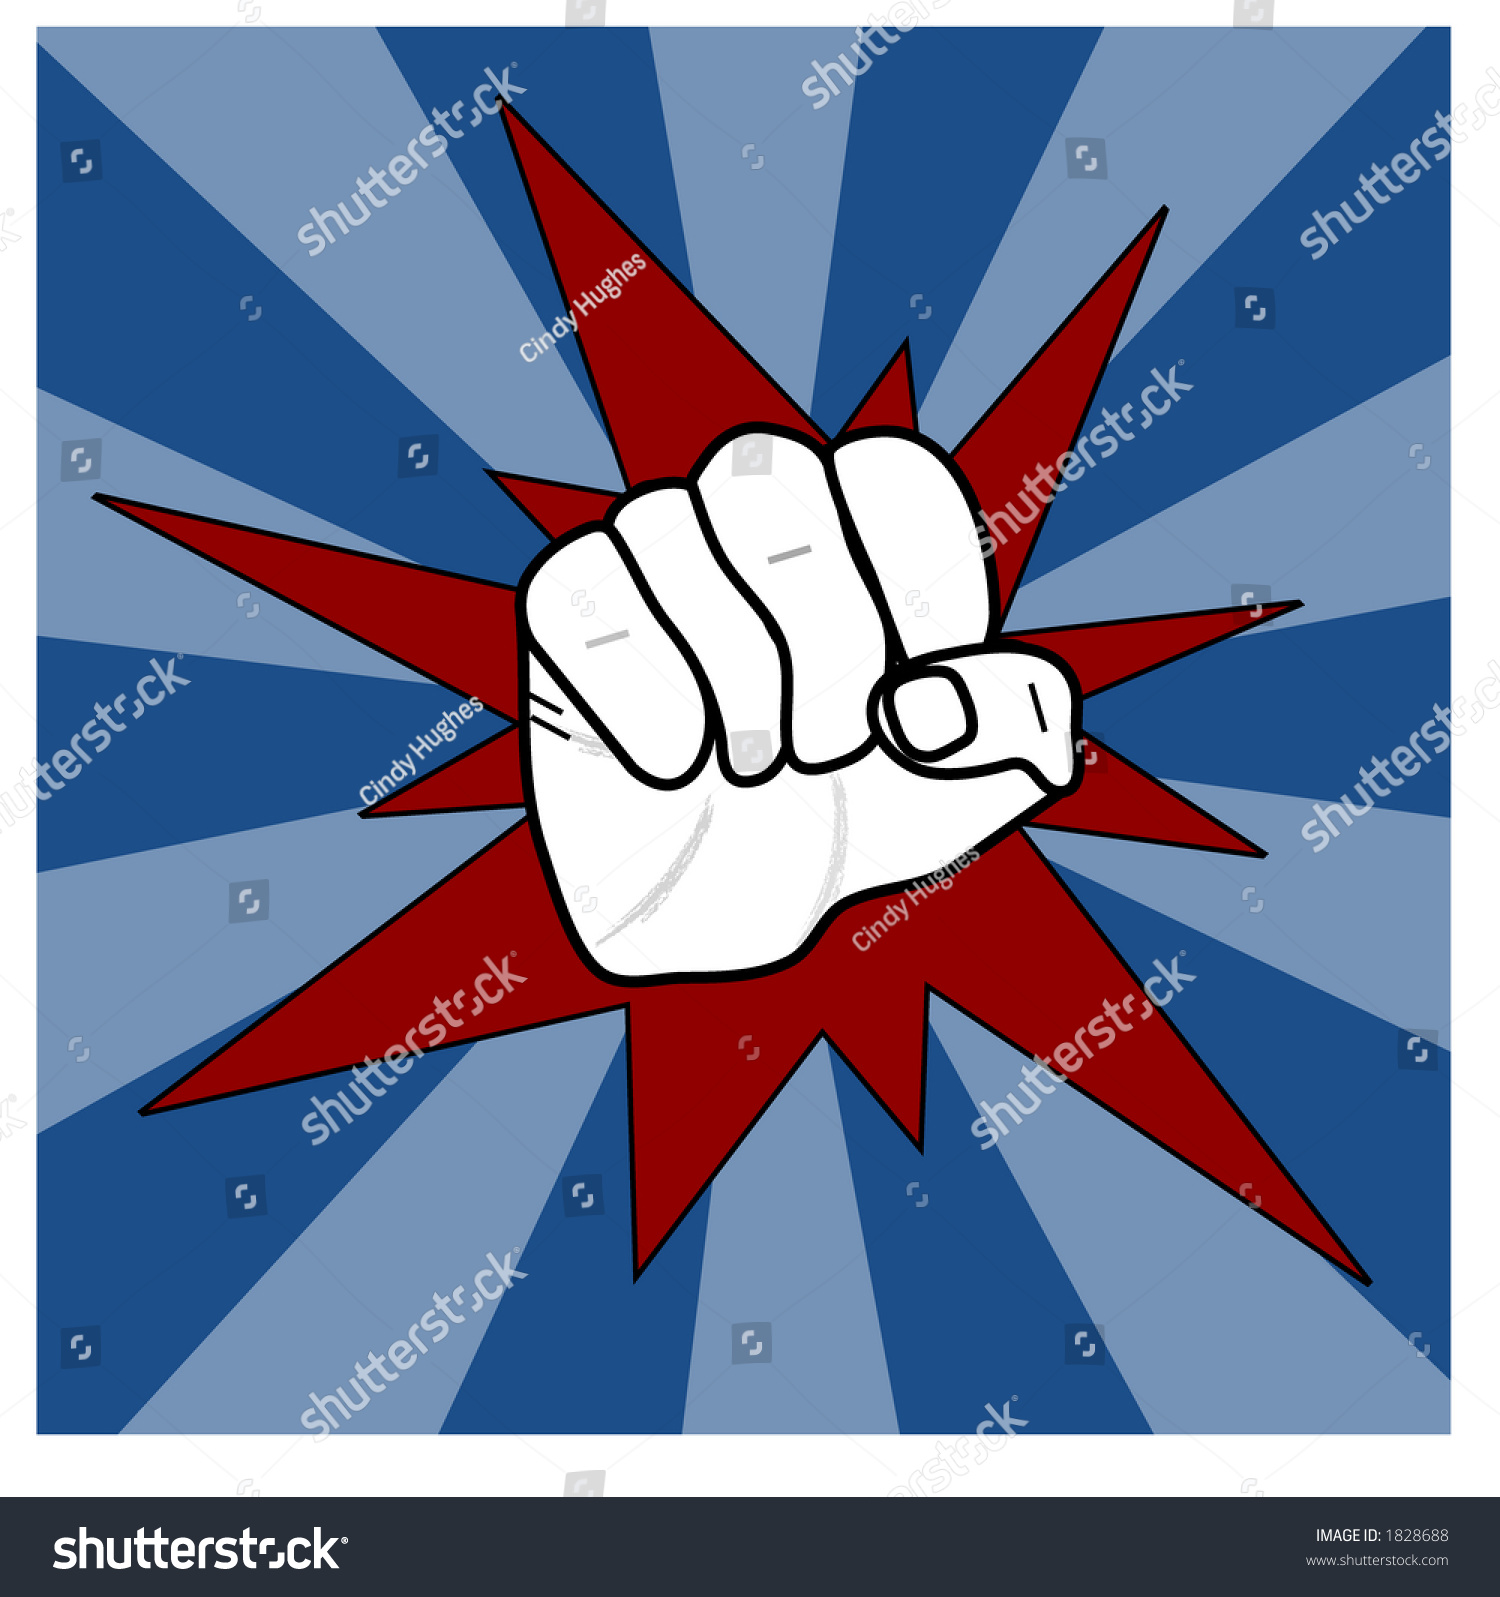 Fist - Punch Illustration - 1828688 : Shutterstock